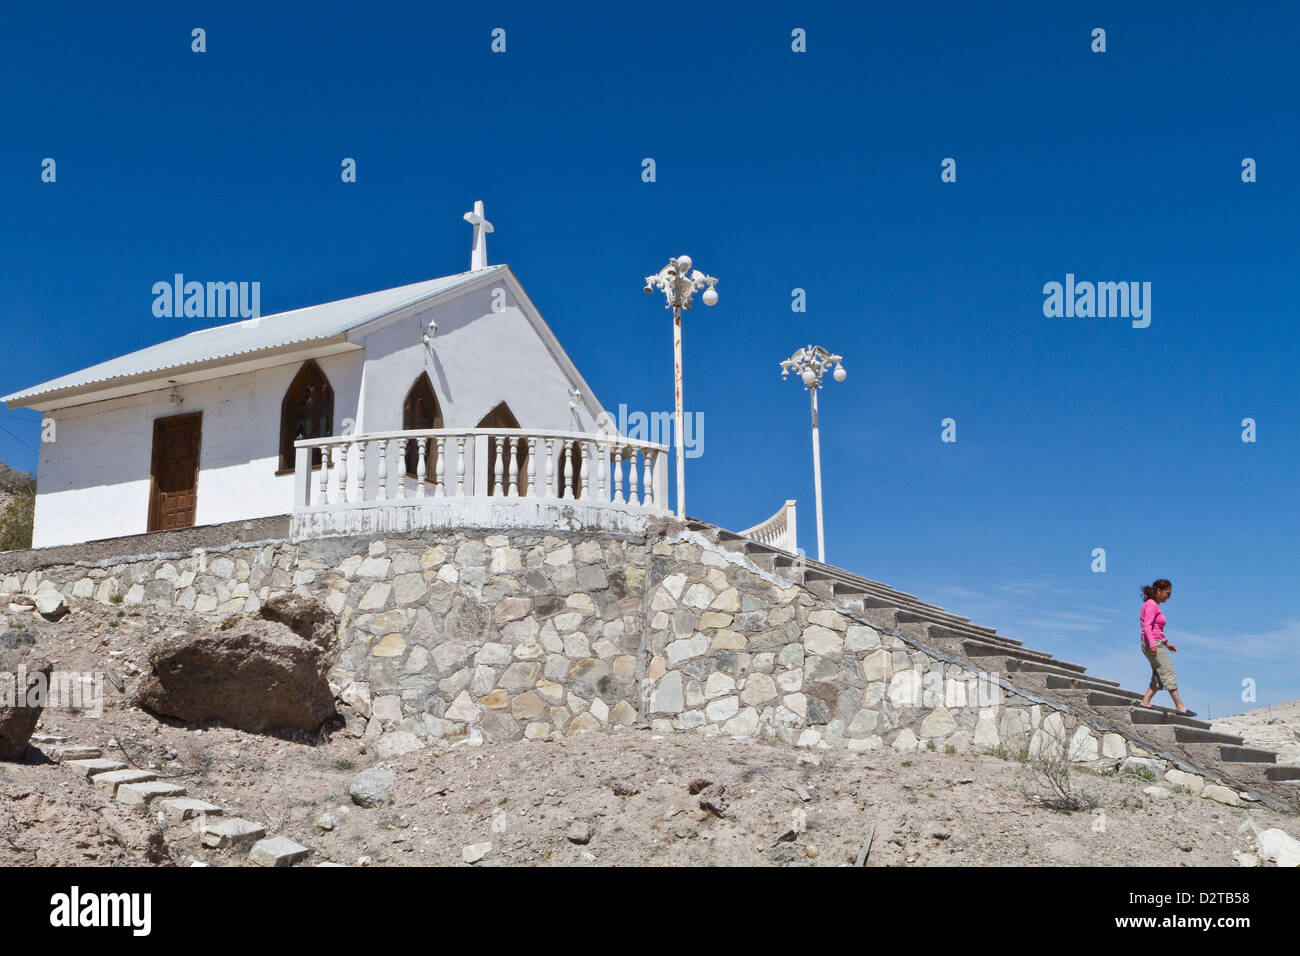 Katholische Kirche, Isla San Marcos, Golf von Kalifornien (Sea of Cortez), Baja California Sur, Mexiko, Nordamerika Stockfoto